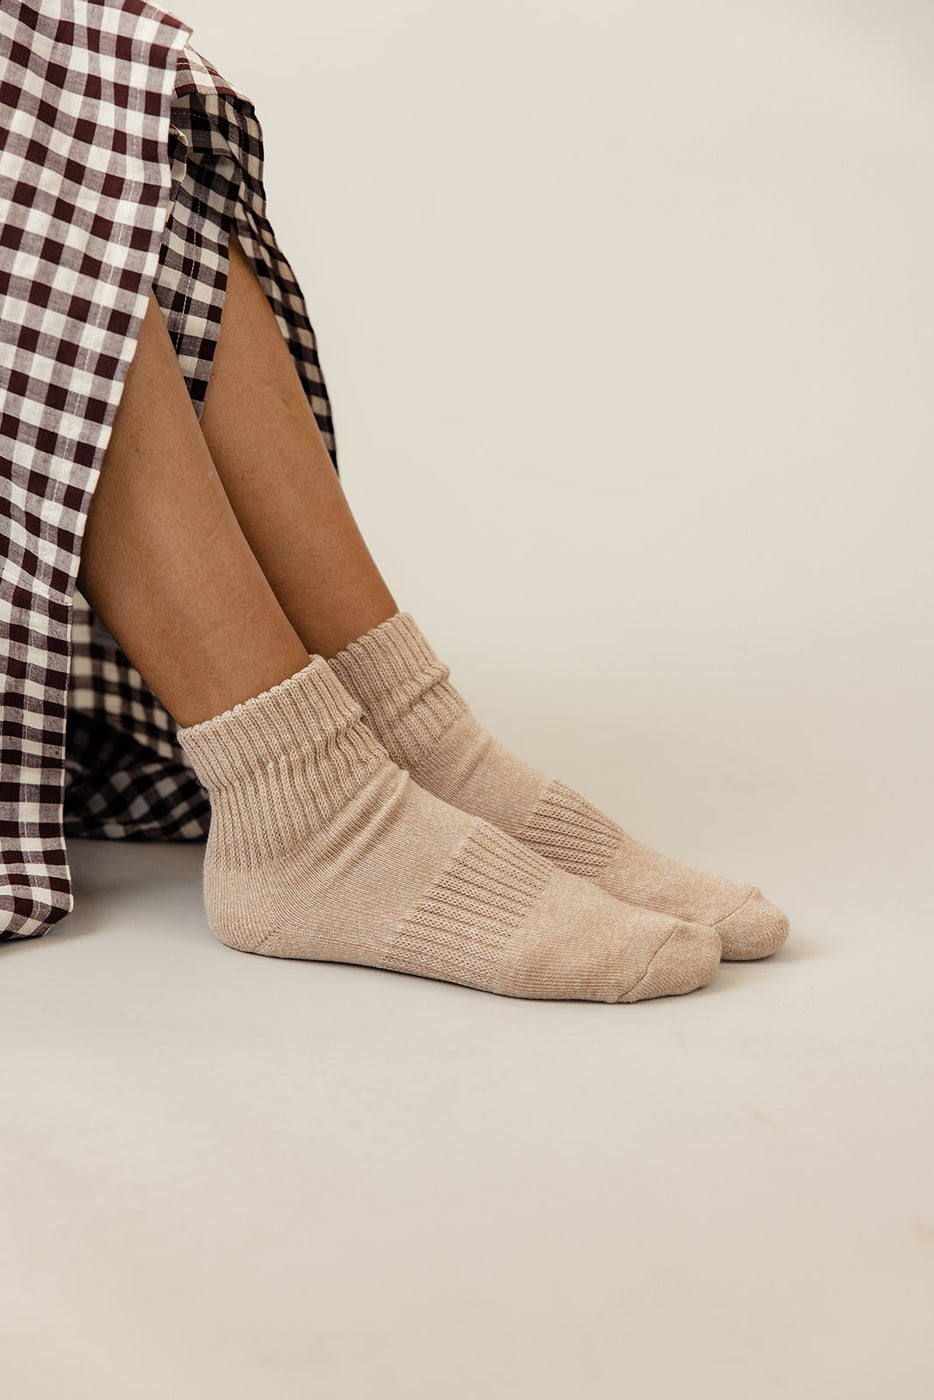 a person's legs wearing socks